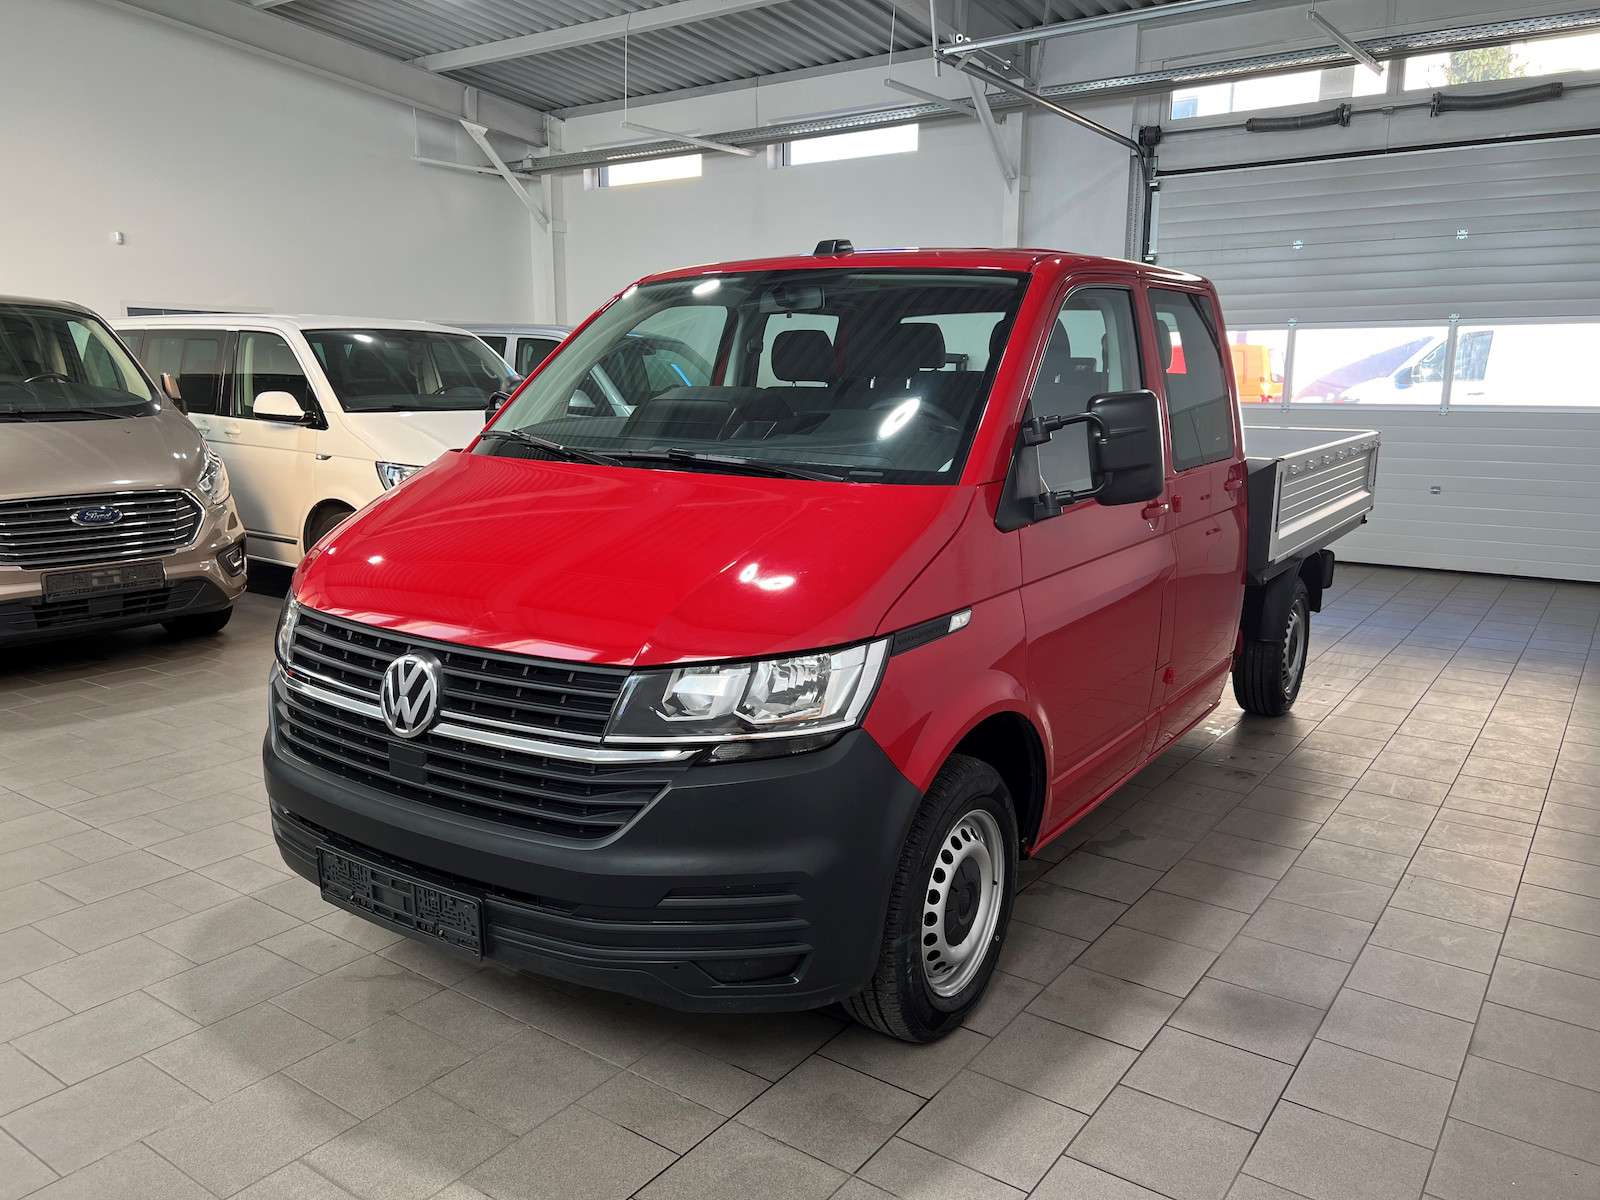 Volkswagen T6.1 Transporter Van in Red used in Naumburg for € 45,990.-